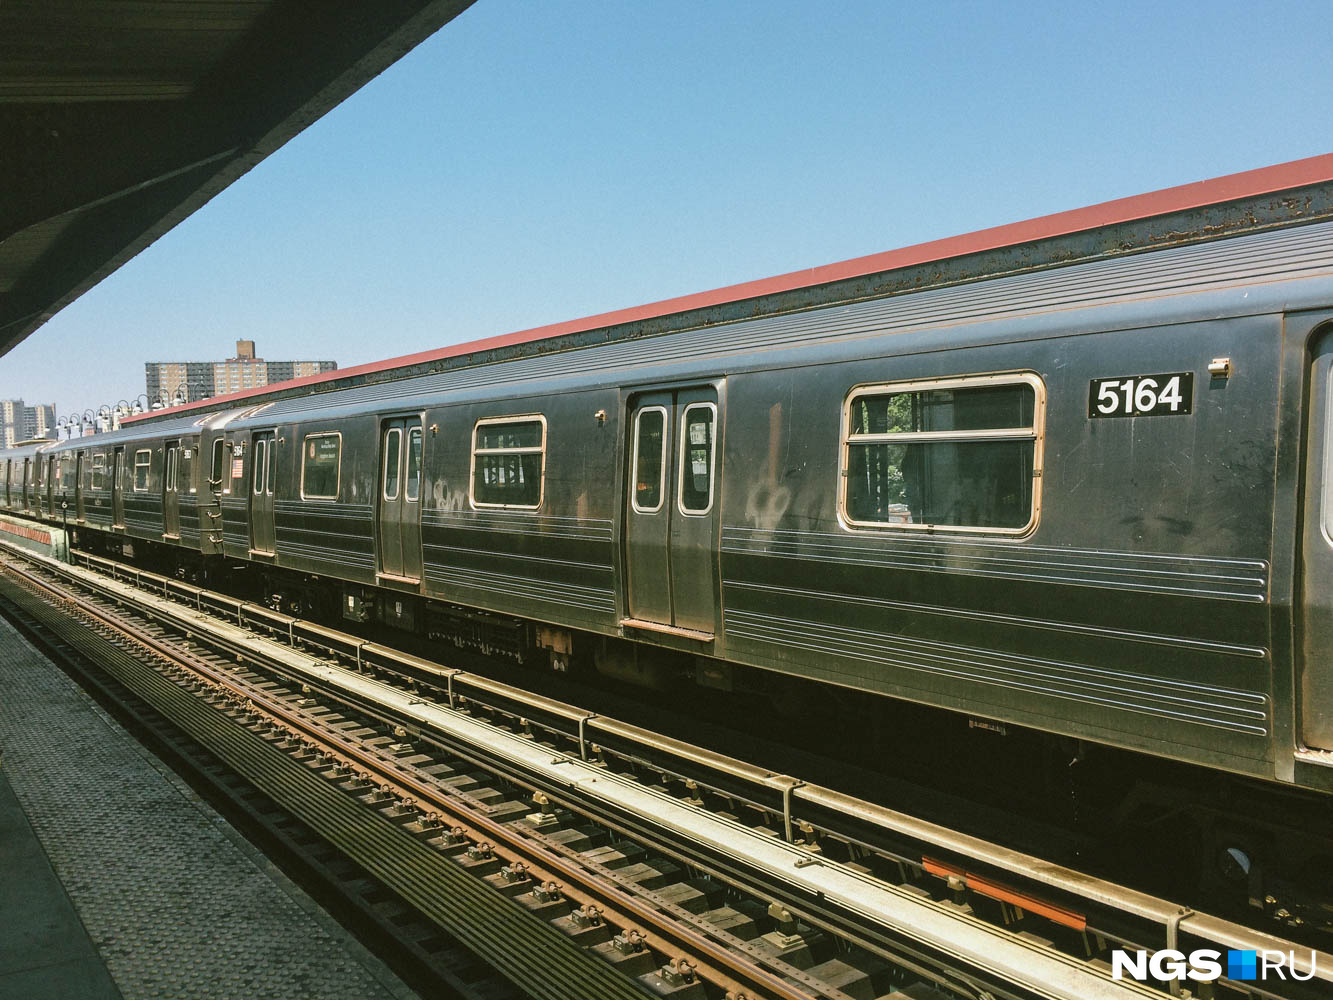 Поезда нью-йоркского метро — серебристого цвета. Нужно быть готовым к тому, что кондиционеры в них работают на полную мощность и, застряв в пробке из метро, можно реально простыть